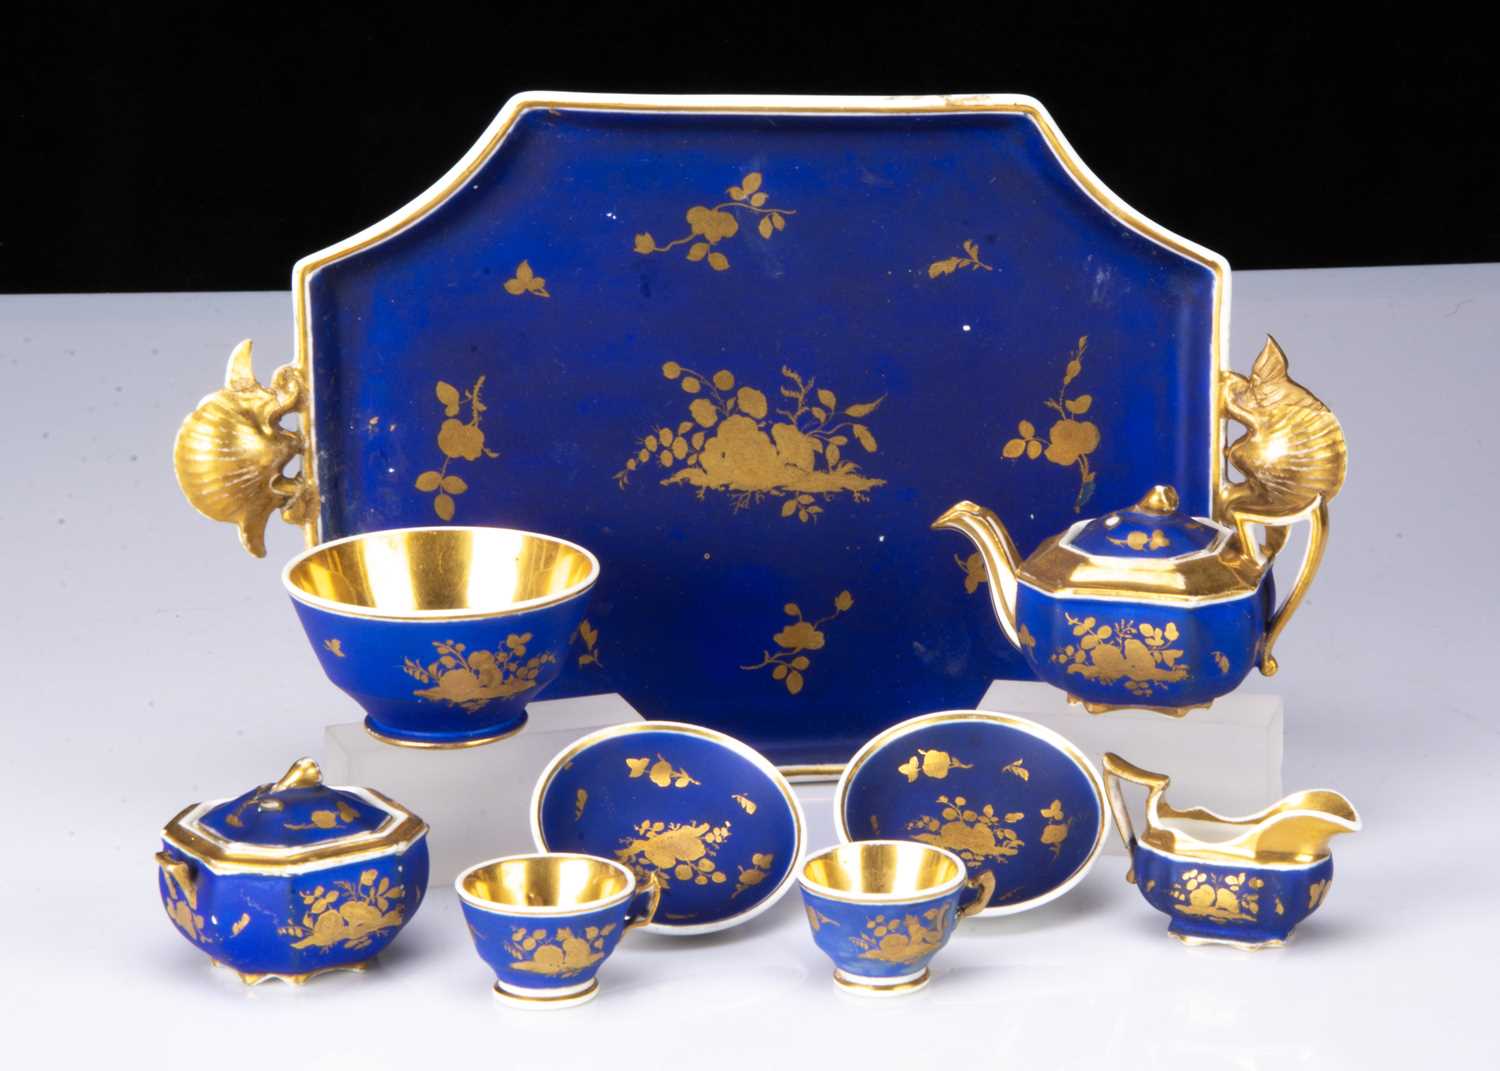 A fine Paris porcelain dolls’ tête-à-tête tea set 1830-40,